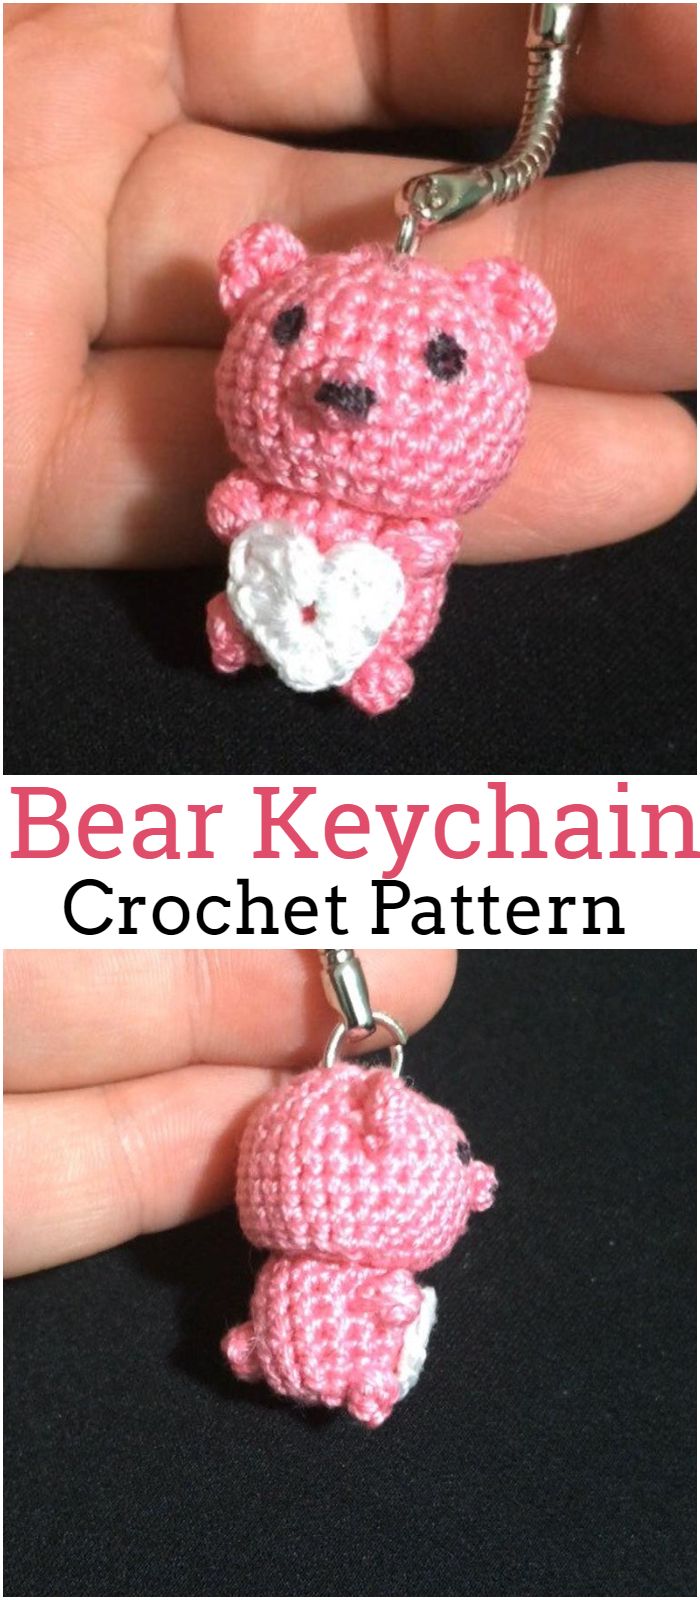 Bear Keychain crochet pattern